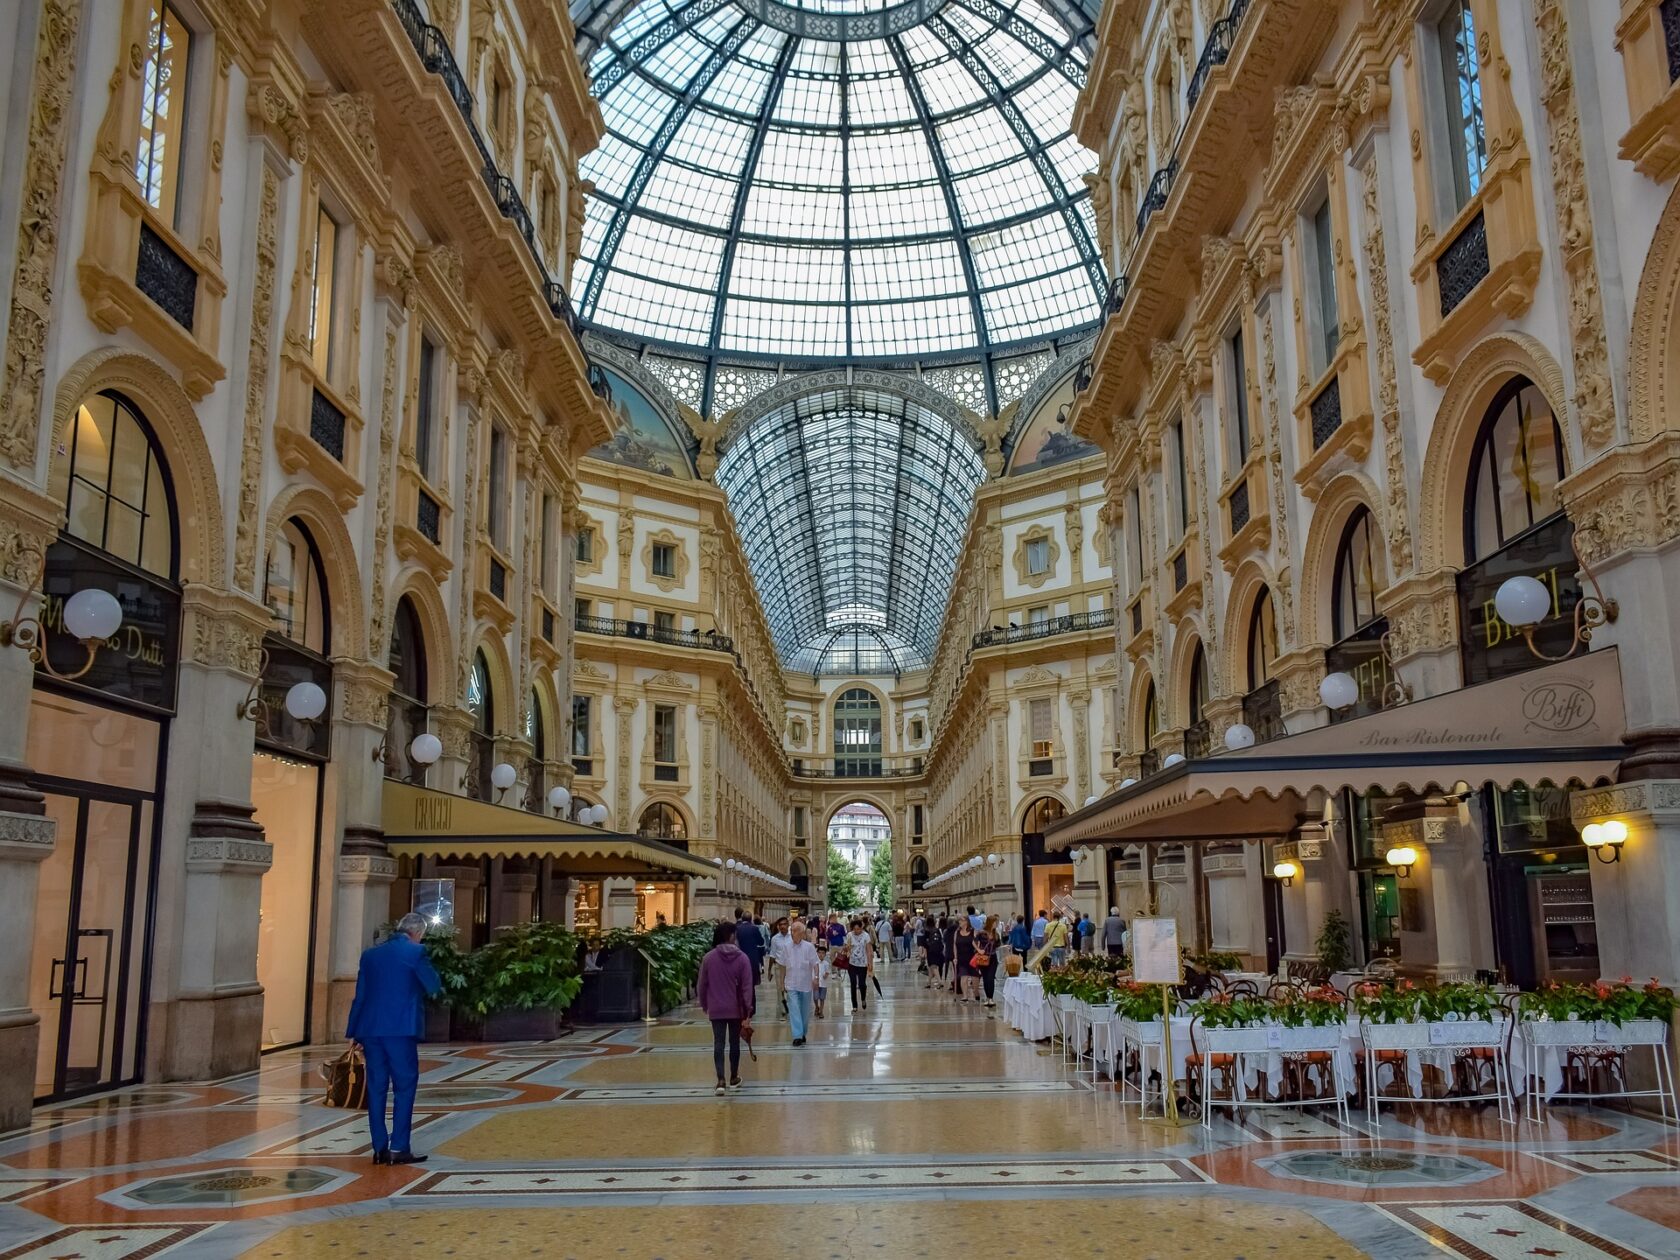 Galleria Vittorio Emanuele II in Milan, Italy (an Atlantis site).